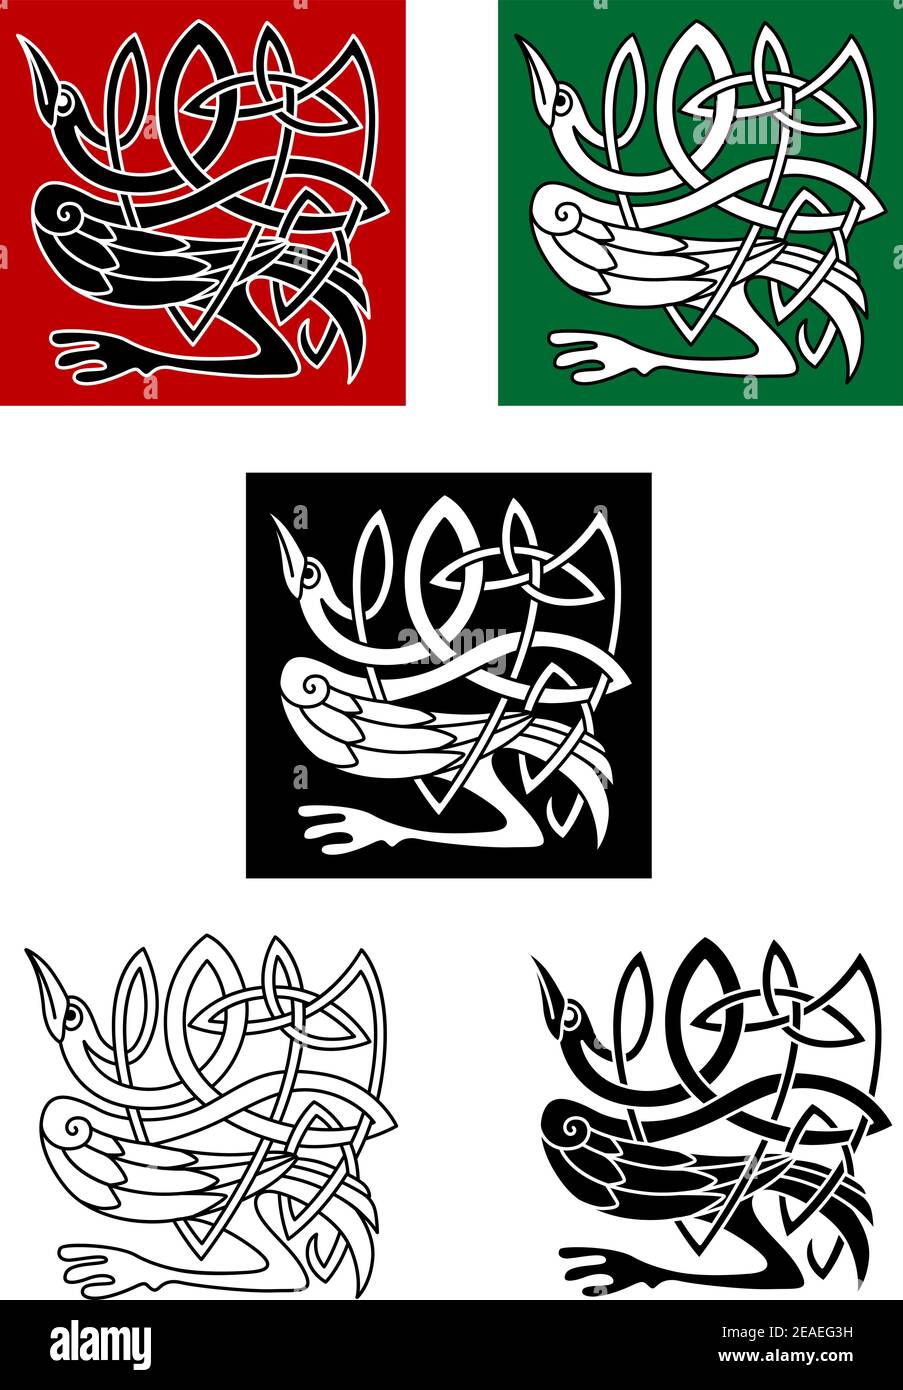 Keltische Ornament mit Reiher Vogel für Tattoo oder dekorative Gestaltung Elemente Stock Vektor